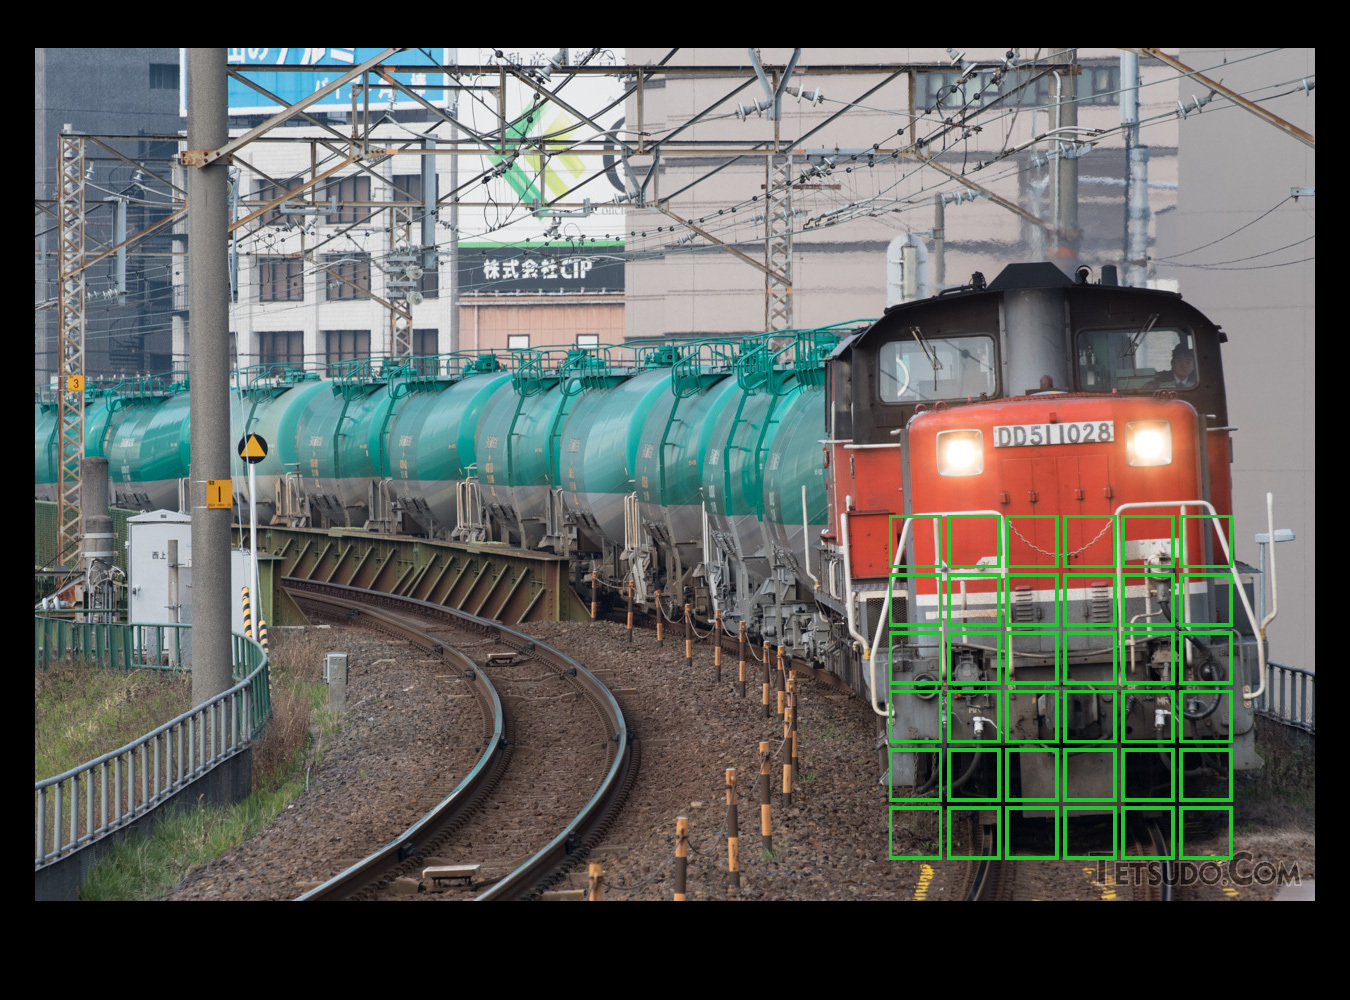 アウトカーブで狙う場合は、列車の顔が正面を向く場所にAFエリアを置く（イメージ）